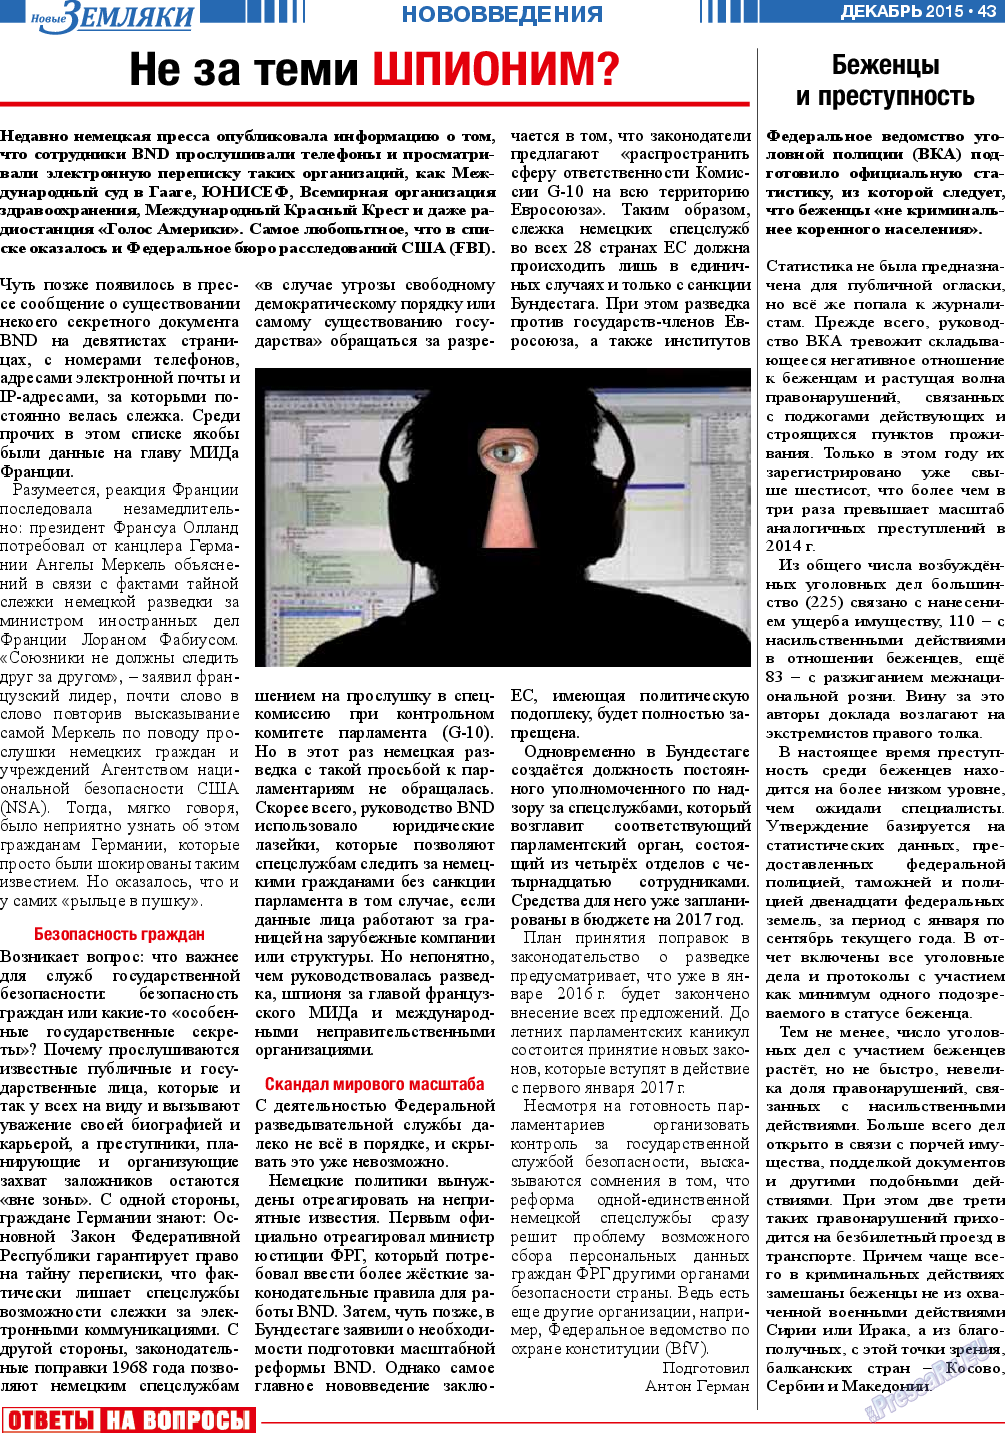 Новые Земляки, газета. 2015 №12 стр.43